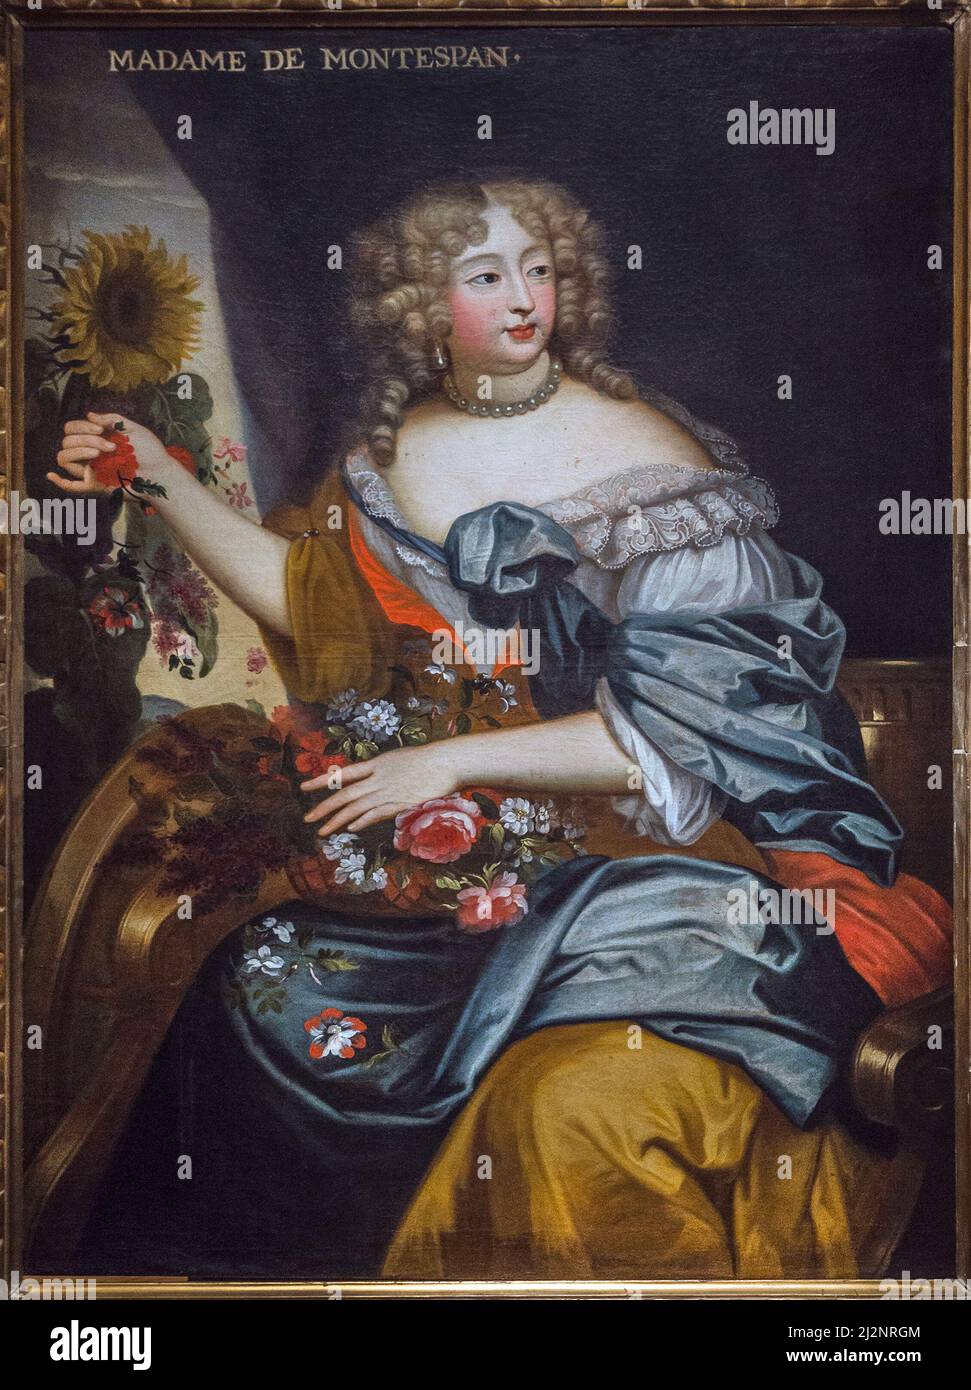 Portrait de Madame de Montespan en flore - Marquise de Montespan -  huile sur toile- 17eme siecle - Le Mans Musée de Tessé Stock Photo